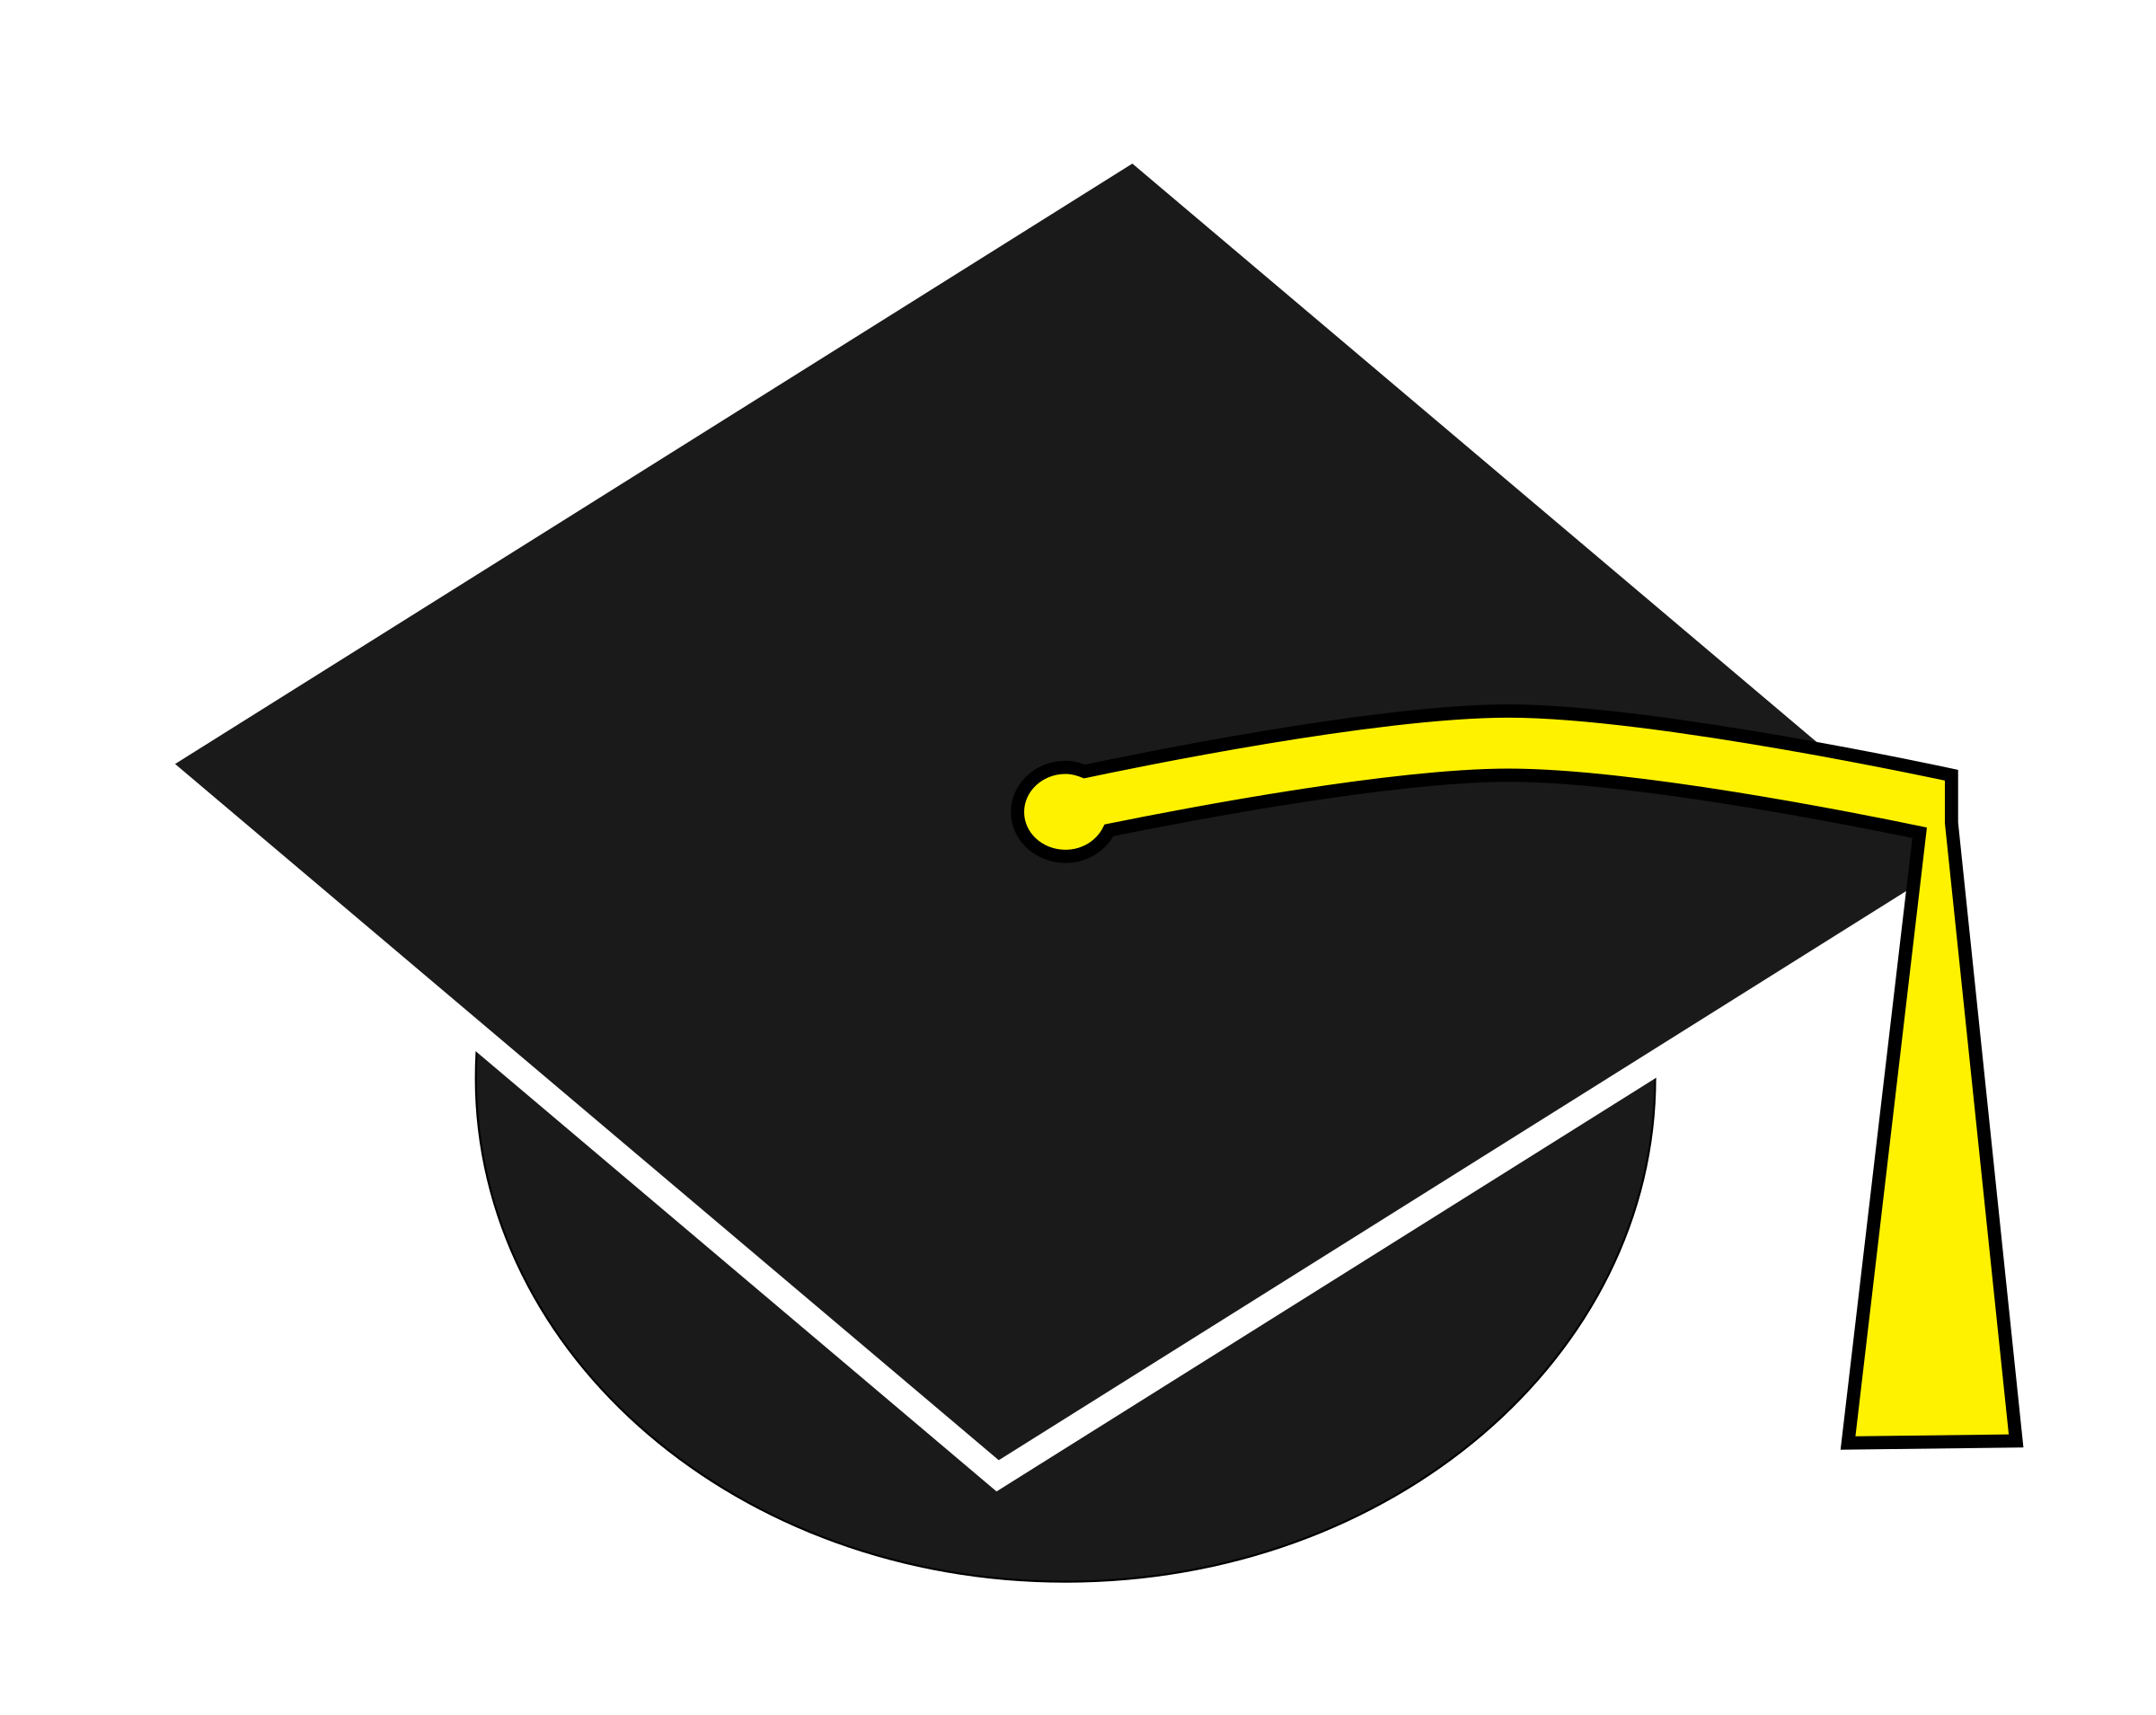 Download Graduation clipart graduation cap, Graduation graduation ...